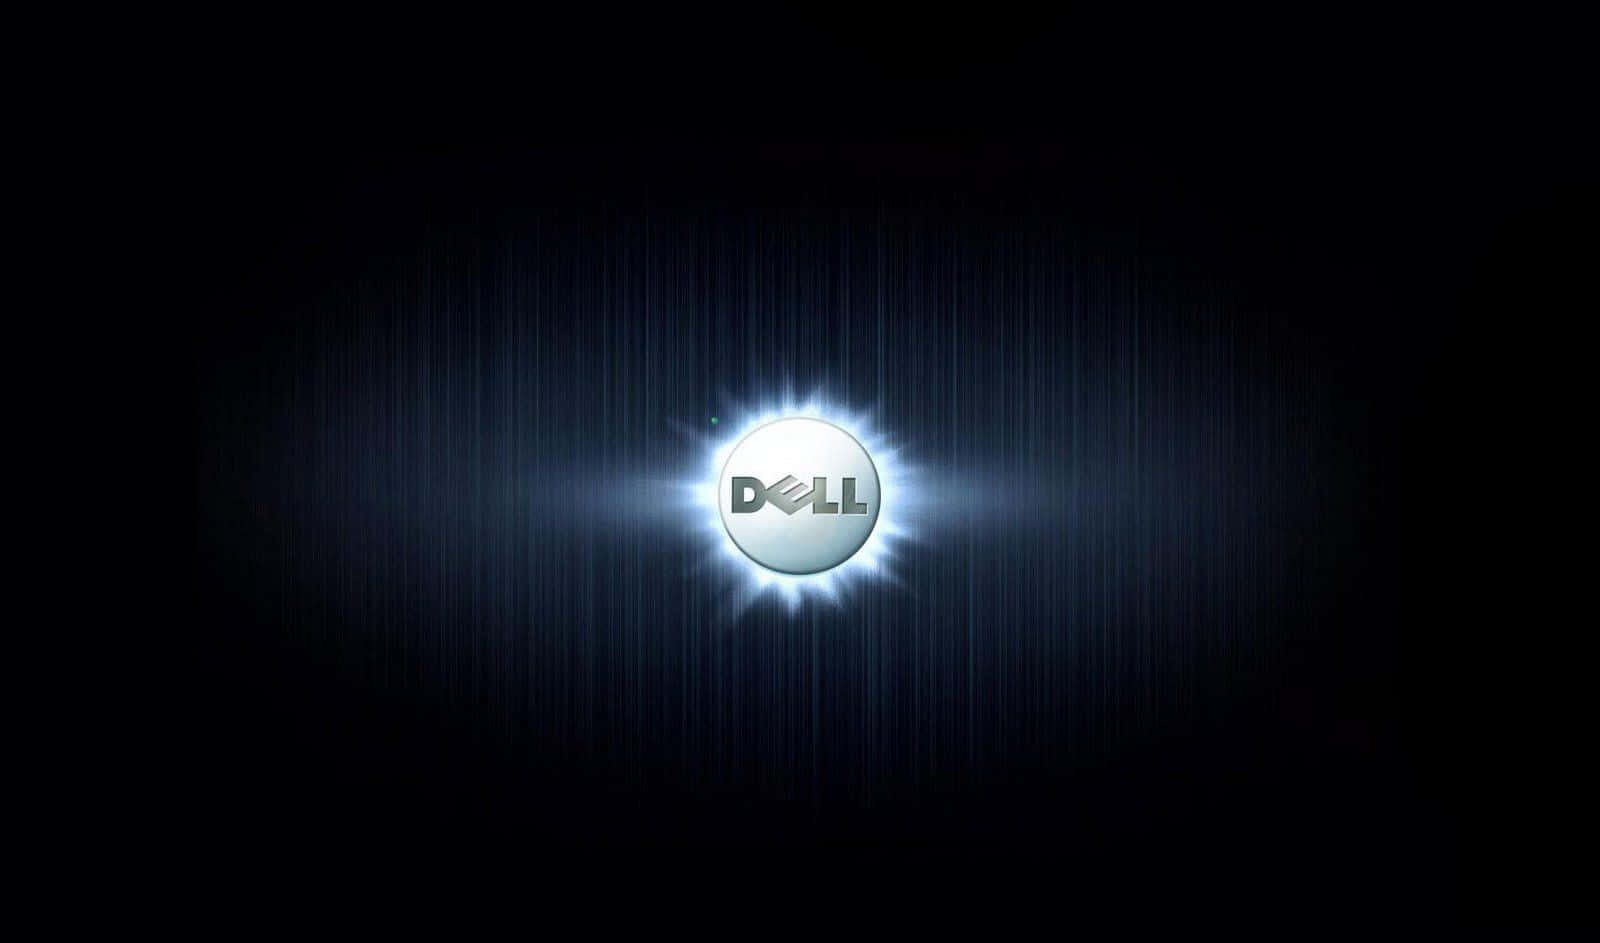 Affärslösningardrivna Av Dell